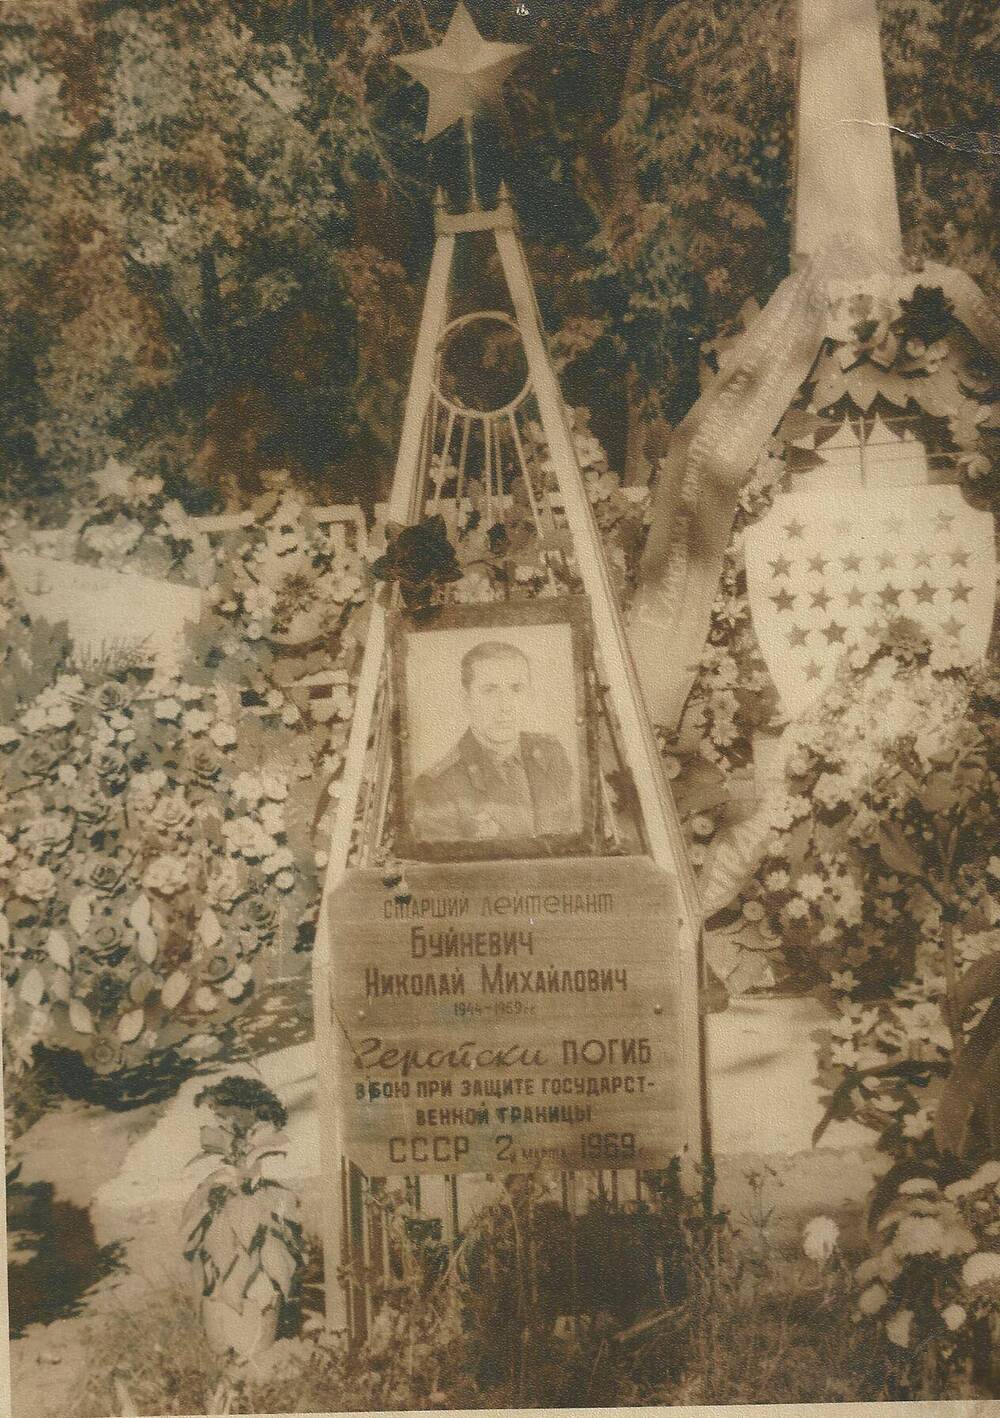 Фотография. Памятник на могиле Буйневича Николая Михайловича, погибшего при защите о. Даманский.